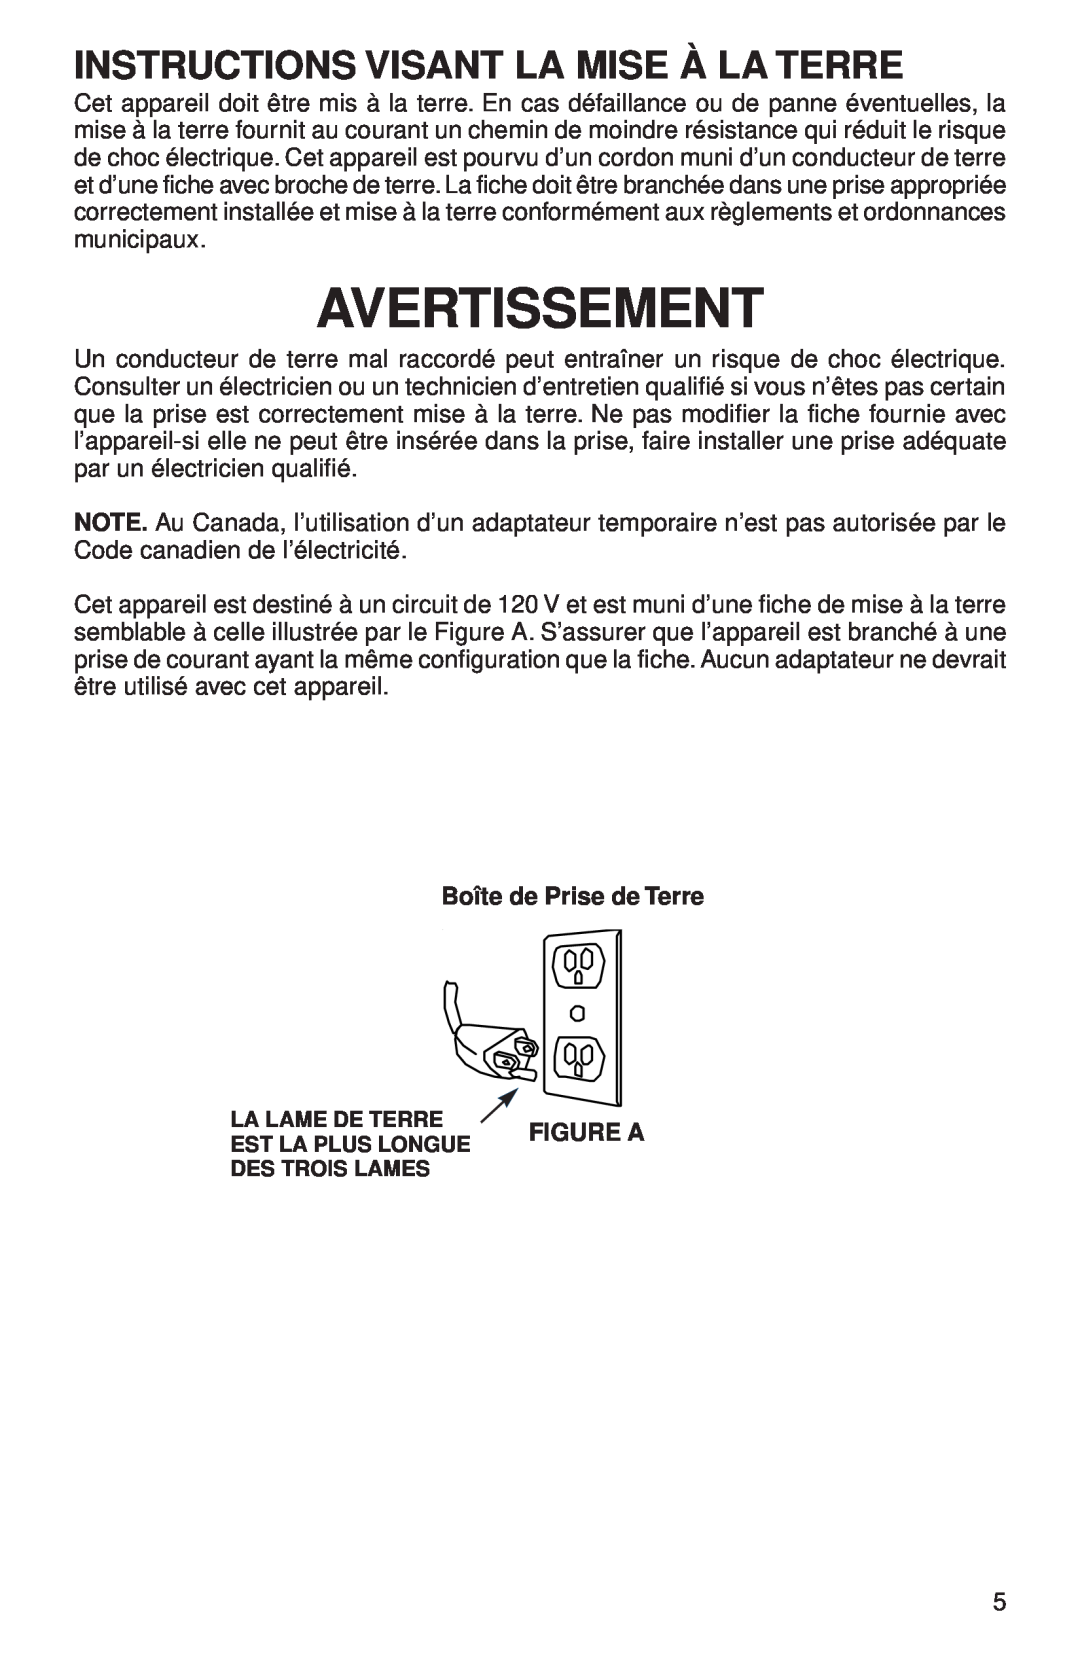 Sanitaire 680 Series warranty Instructions Visant La Mise À La Terre, Avertissement, Boîte de Prise de Terre, Figure A 